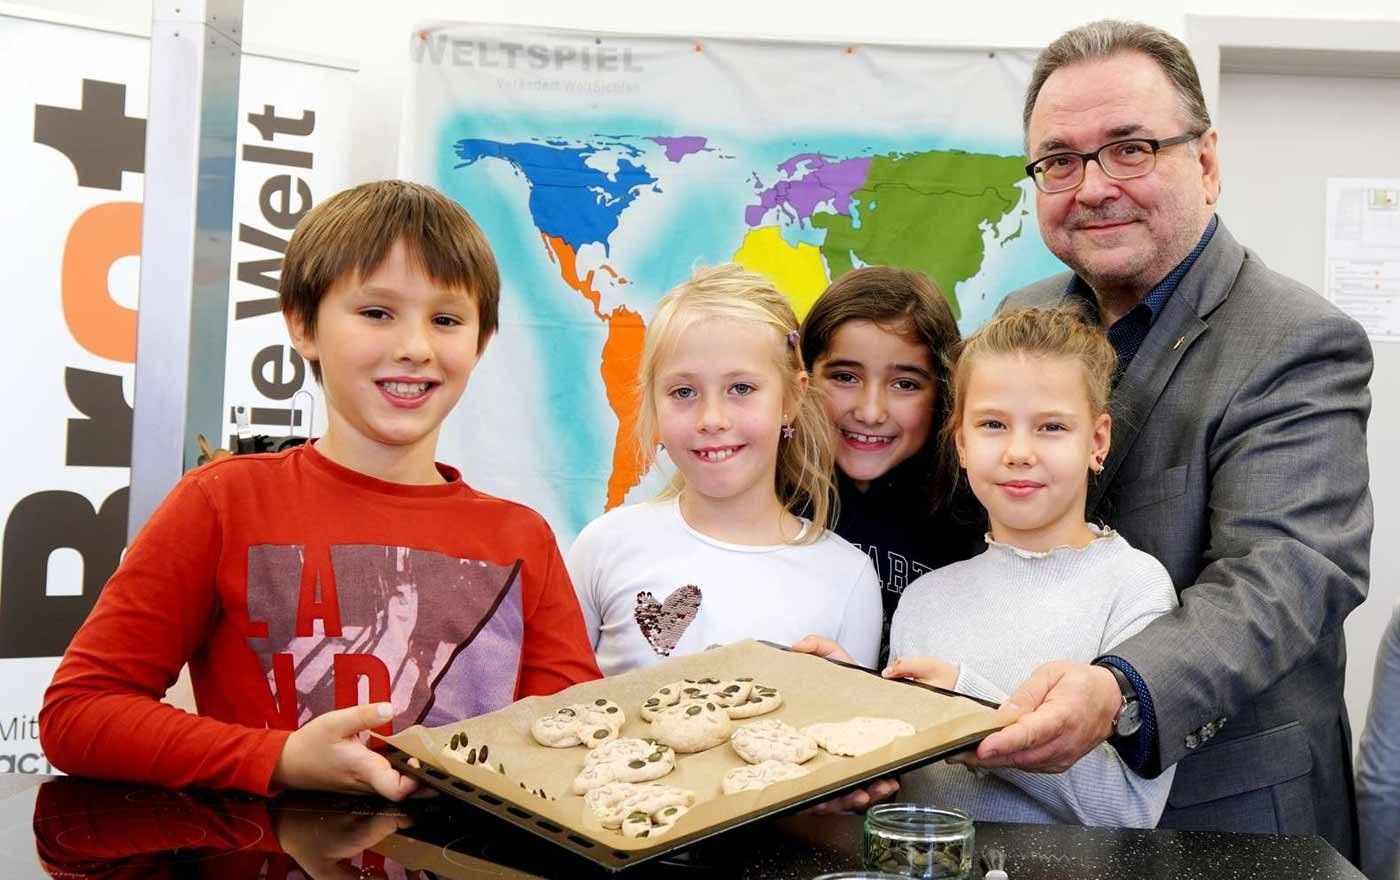 Gemeinsam mit Kindern der Evangelischen Schule am Karlsplatz buk Chalupka am Montag Brot, um für die Probleme des globalen Hungers zu sensibilisieren. Foto: Brot für die Welt